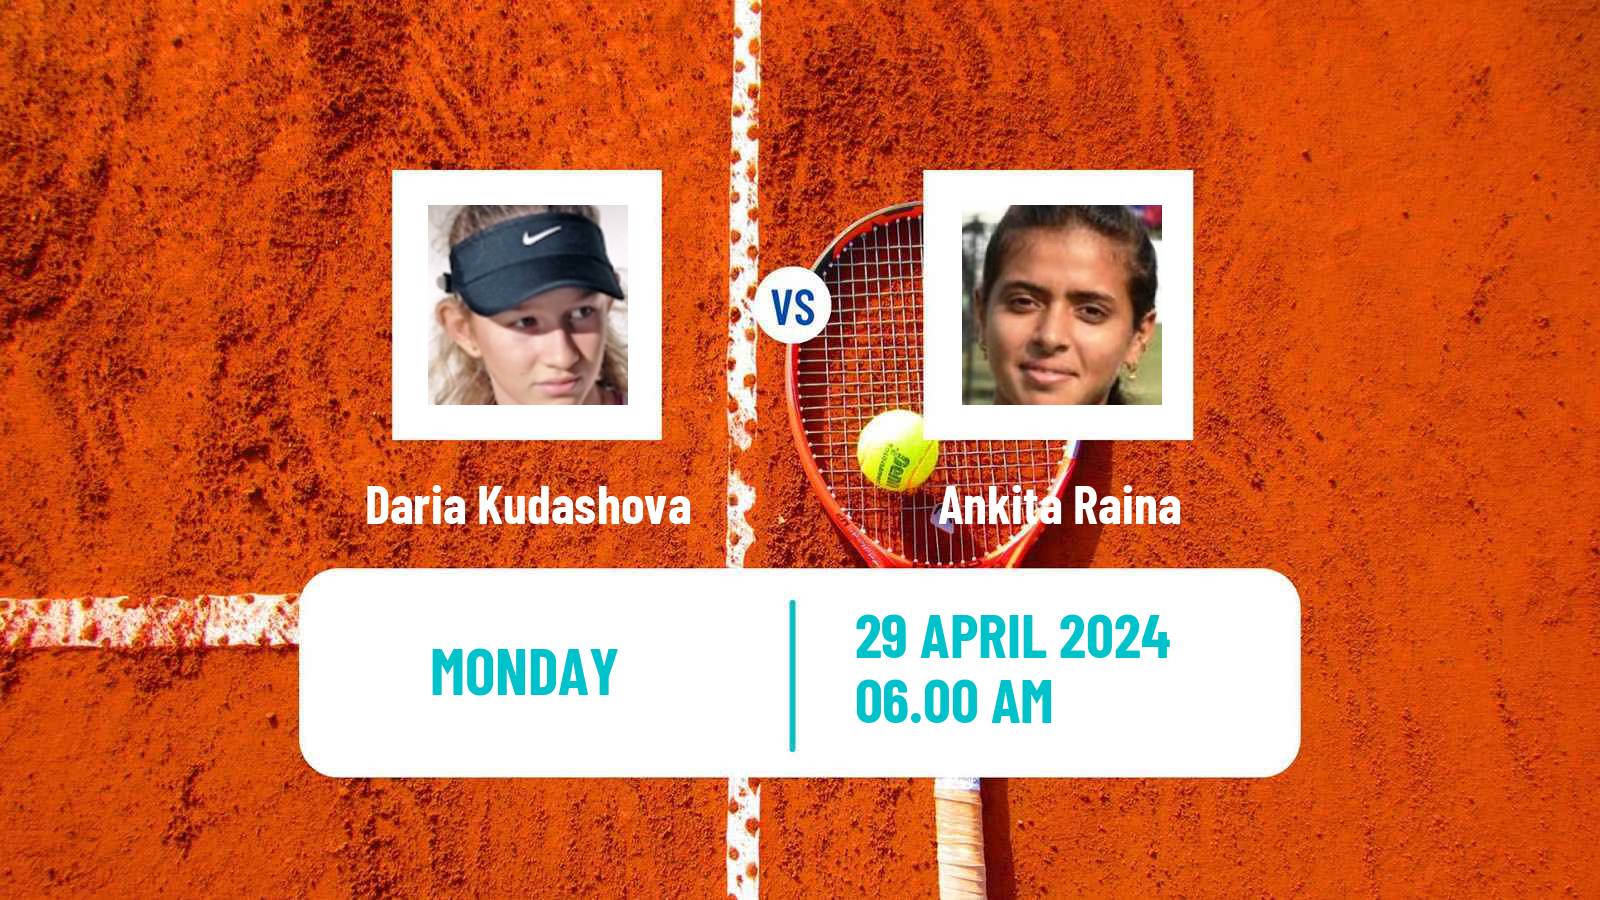 Tennis ITF W50 Lopota 2 Women Daria Kudashova - Ankita Raina